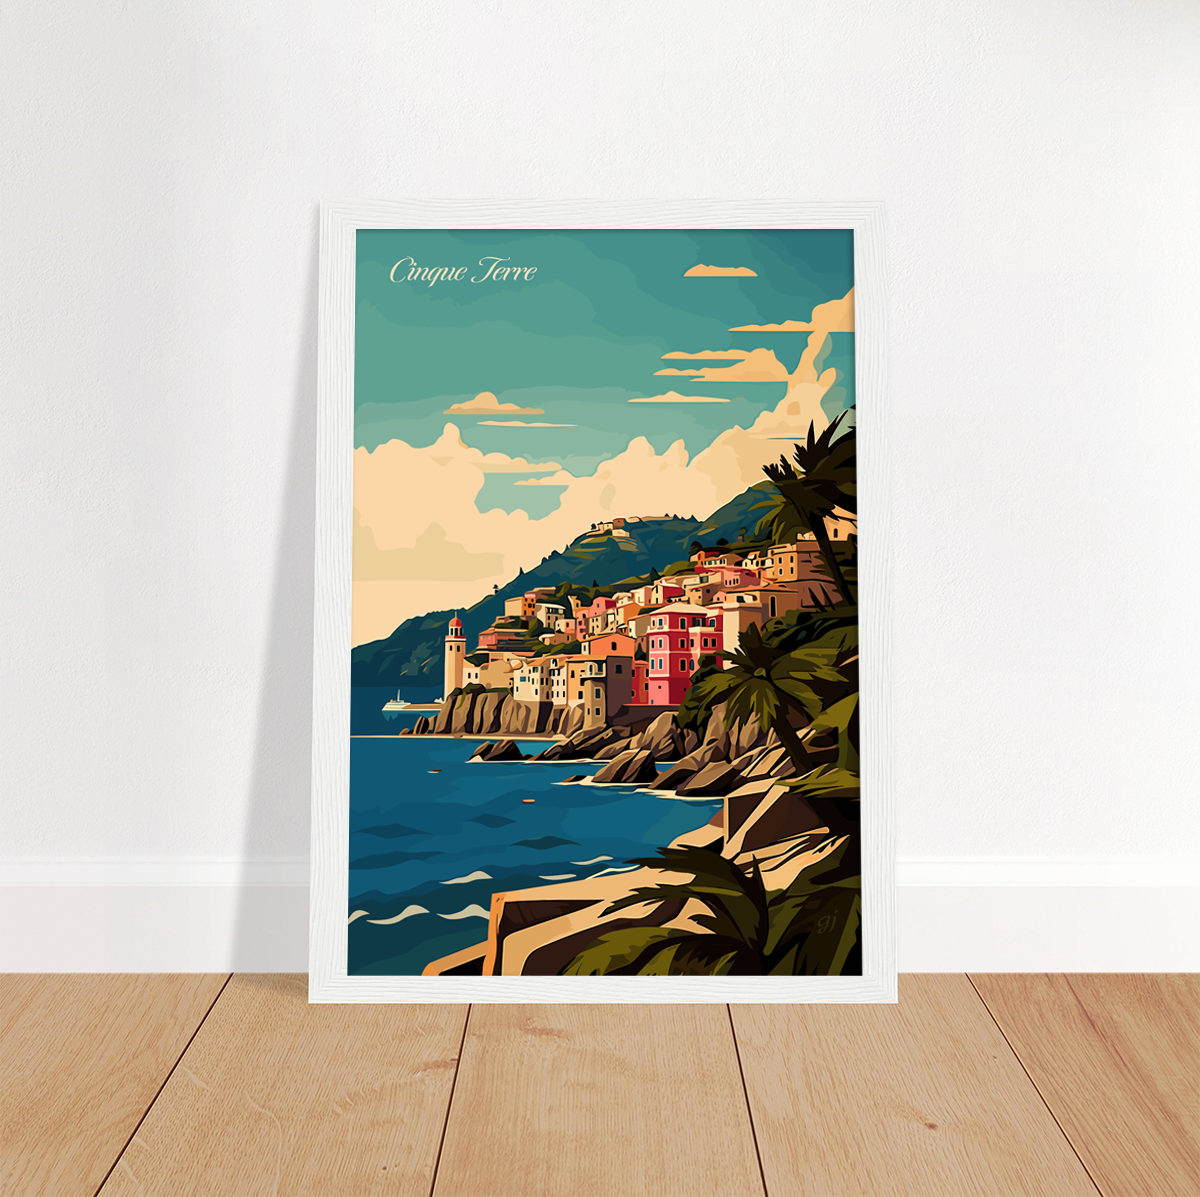 Cinque Terre poster by bon voyage design